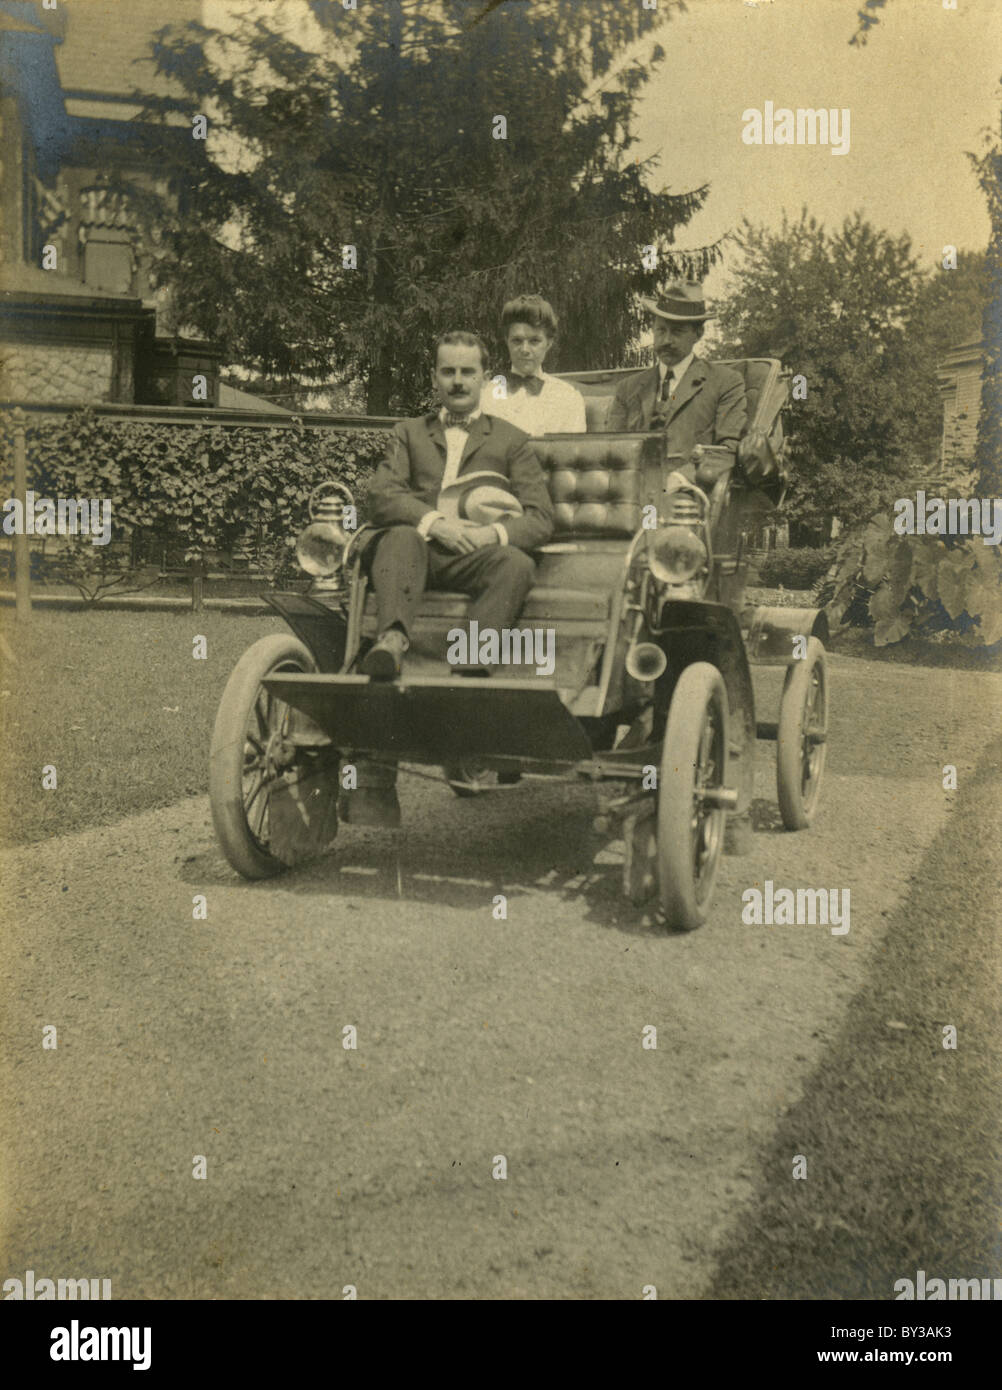 Circa 1910 foto di antiquariato, una utilitaria style auto. Posizione sconosciuta, probabilmente la Nuova Inghilterra regione, STATI UNITI D'AMERICA. Fonte: originale stampa fotografica. Foto Stock